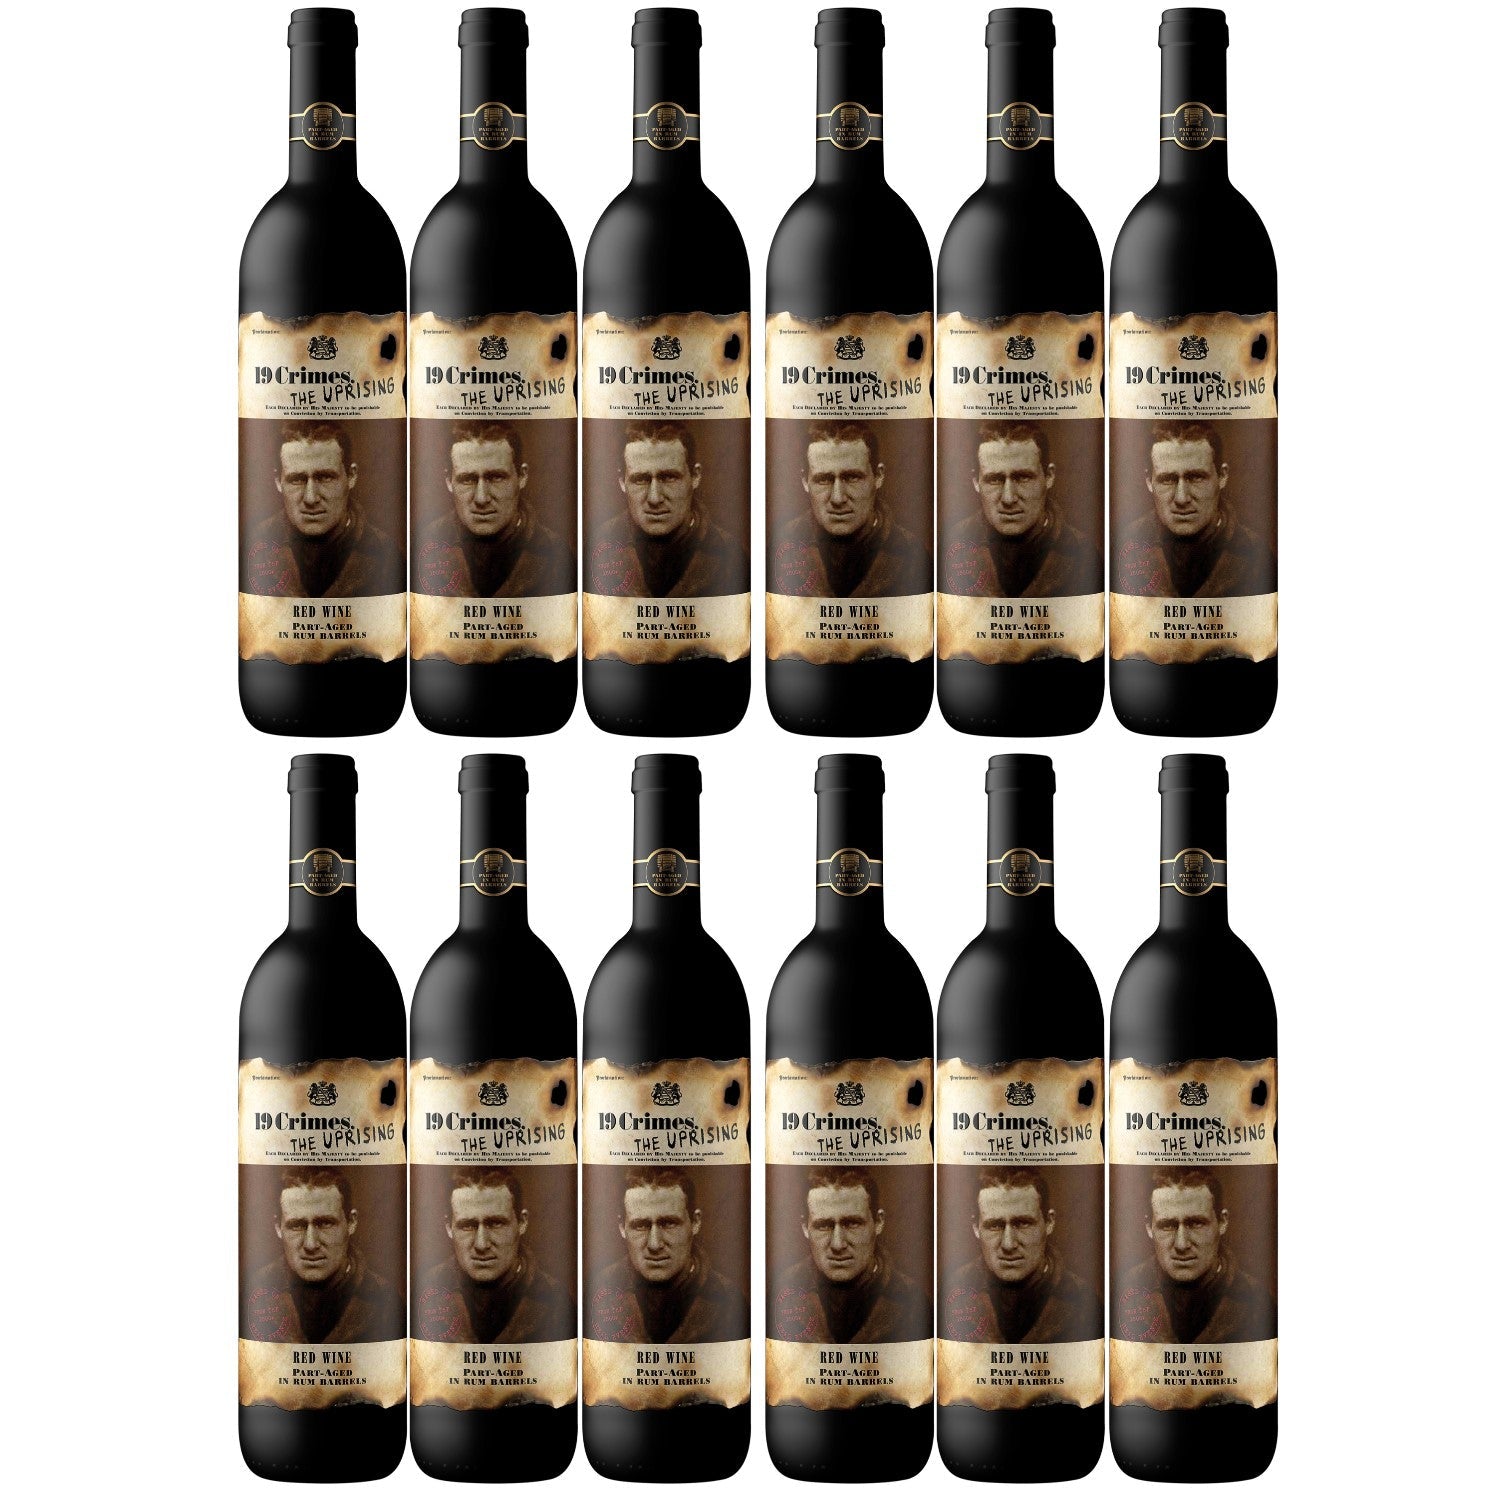 19 Crimes The Uprising Red Shiraz Durif Grenache Rotwein Wein Trocken Australien (12 x 0.75l) - Versanel - Wein